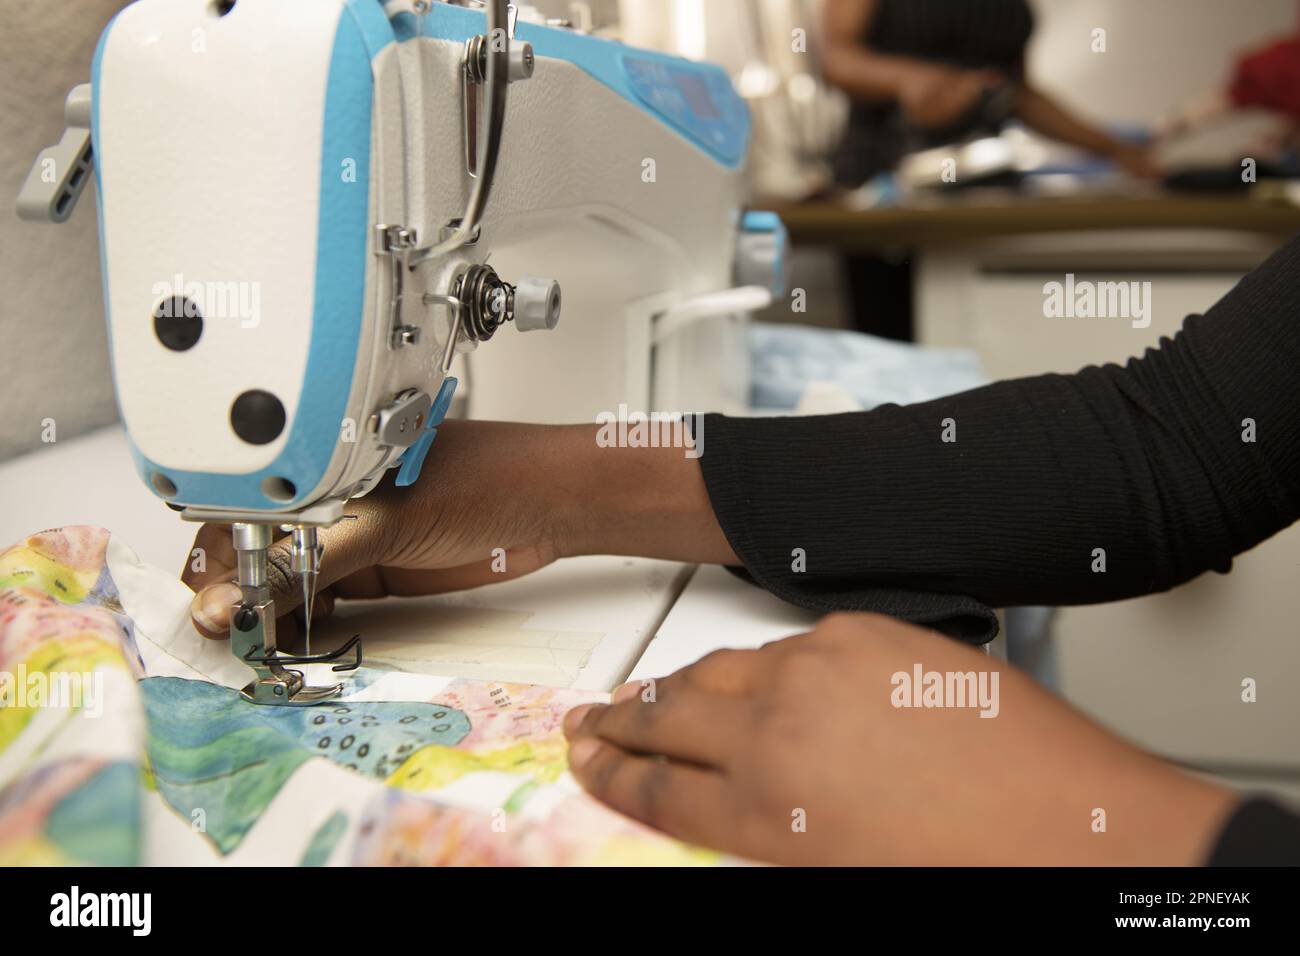 Mani di una donna dai capelli scuri che utilizza una macchina da cucire industriale in un laboratorio di cucito Foto Stock